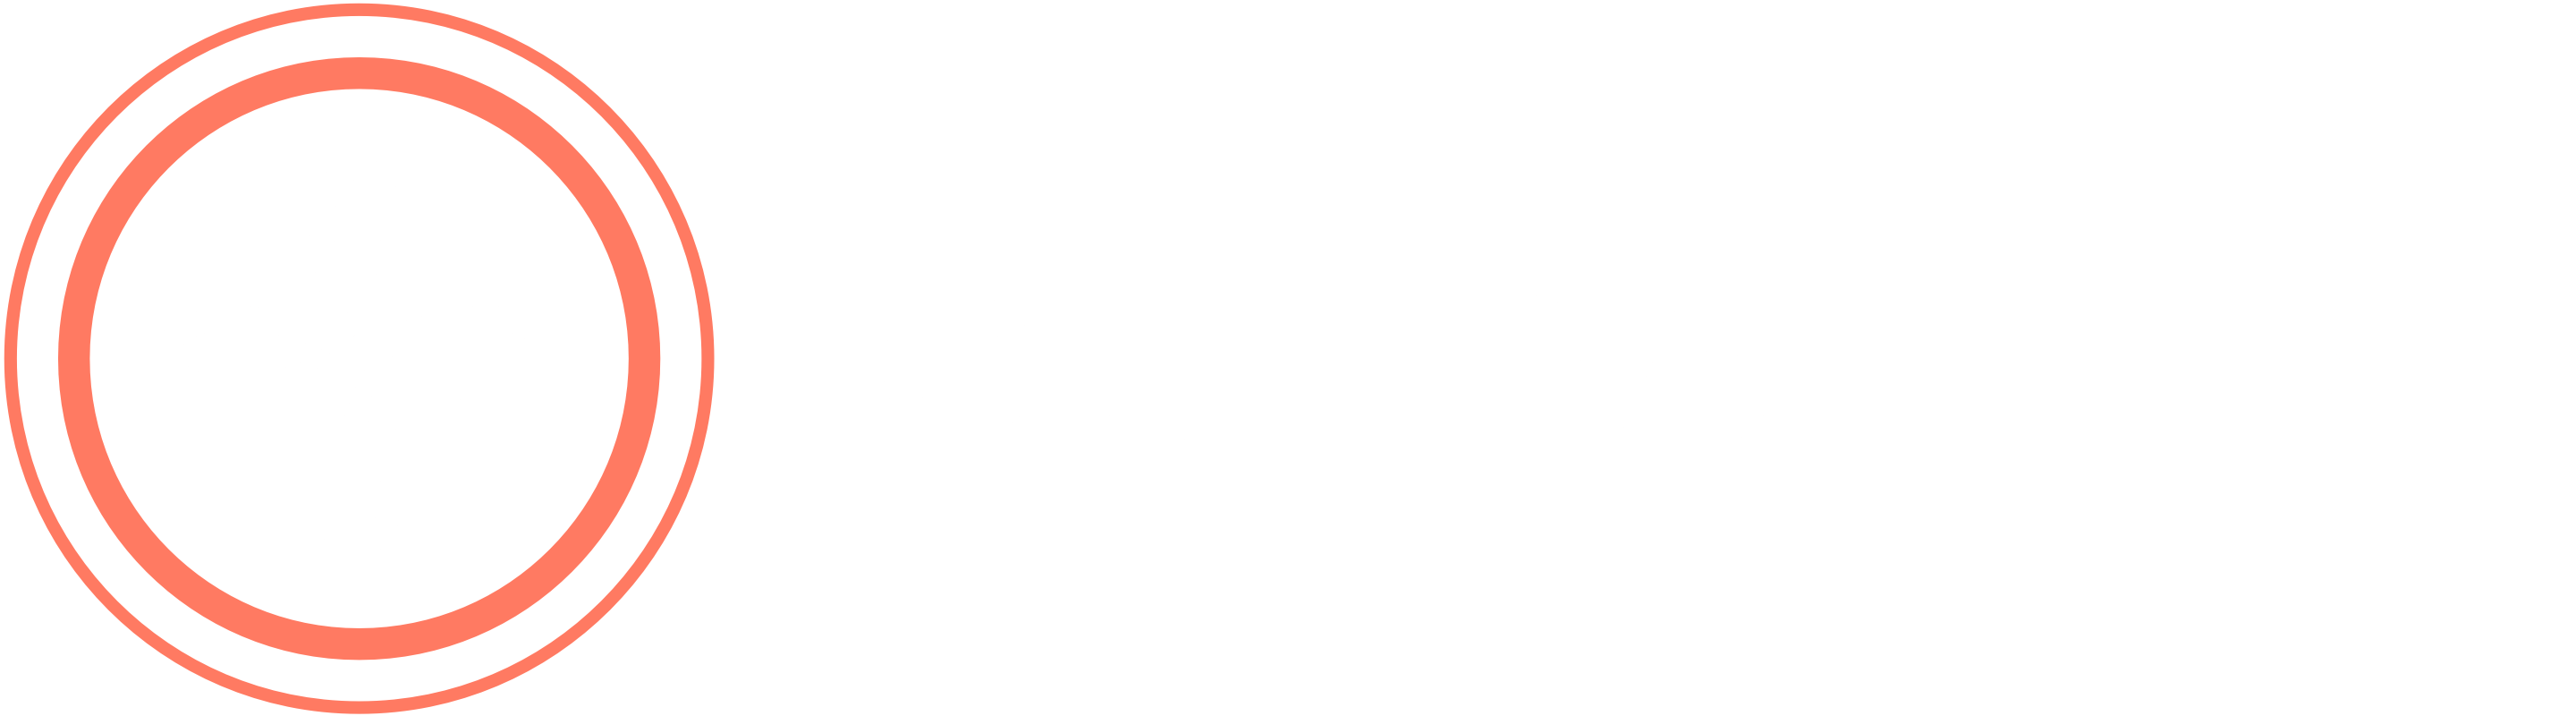 Outpatient Logo - Outpatient - Get the Outpatient App - Outpatient